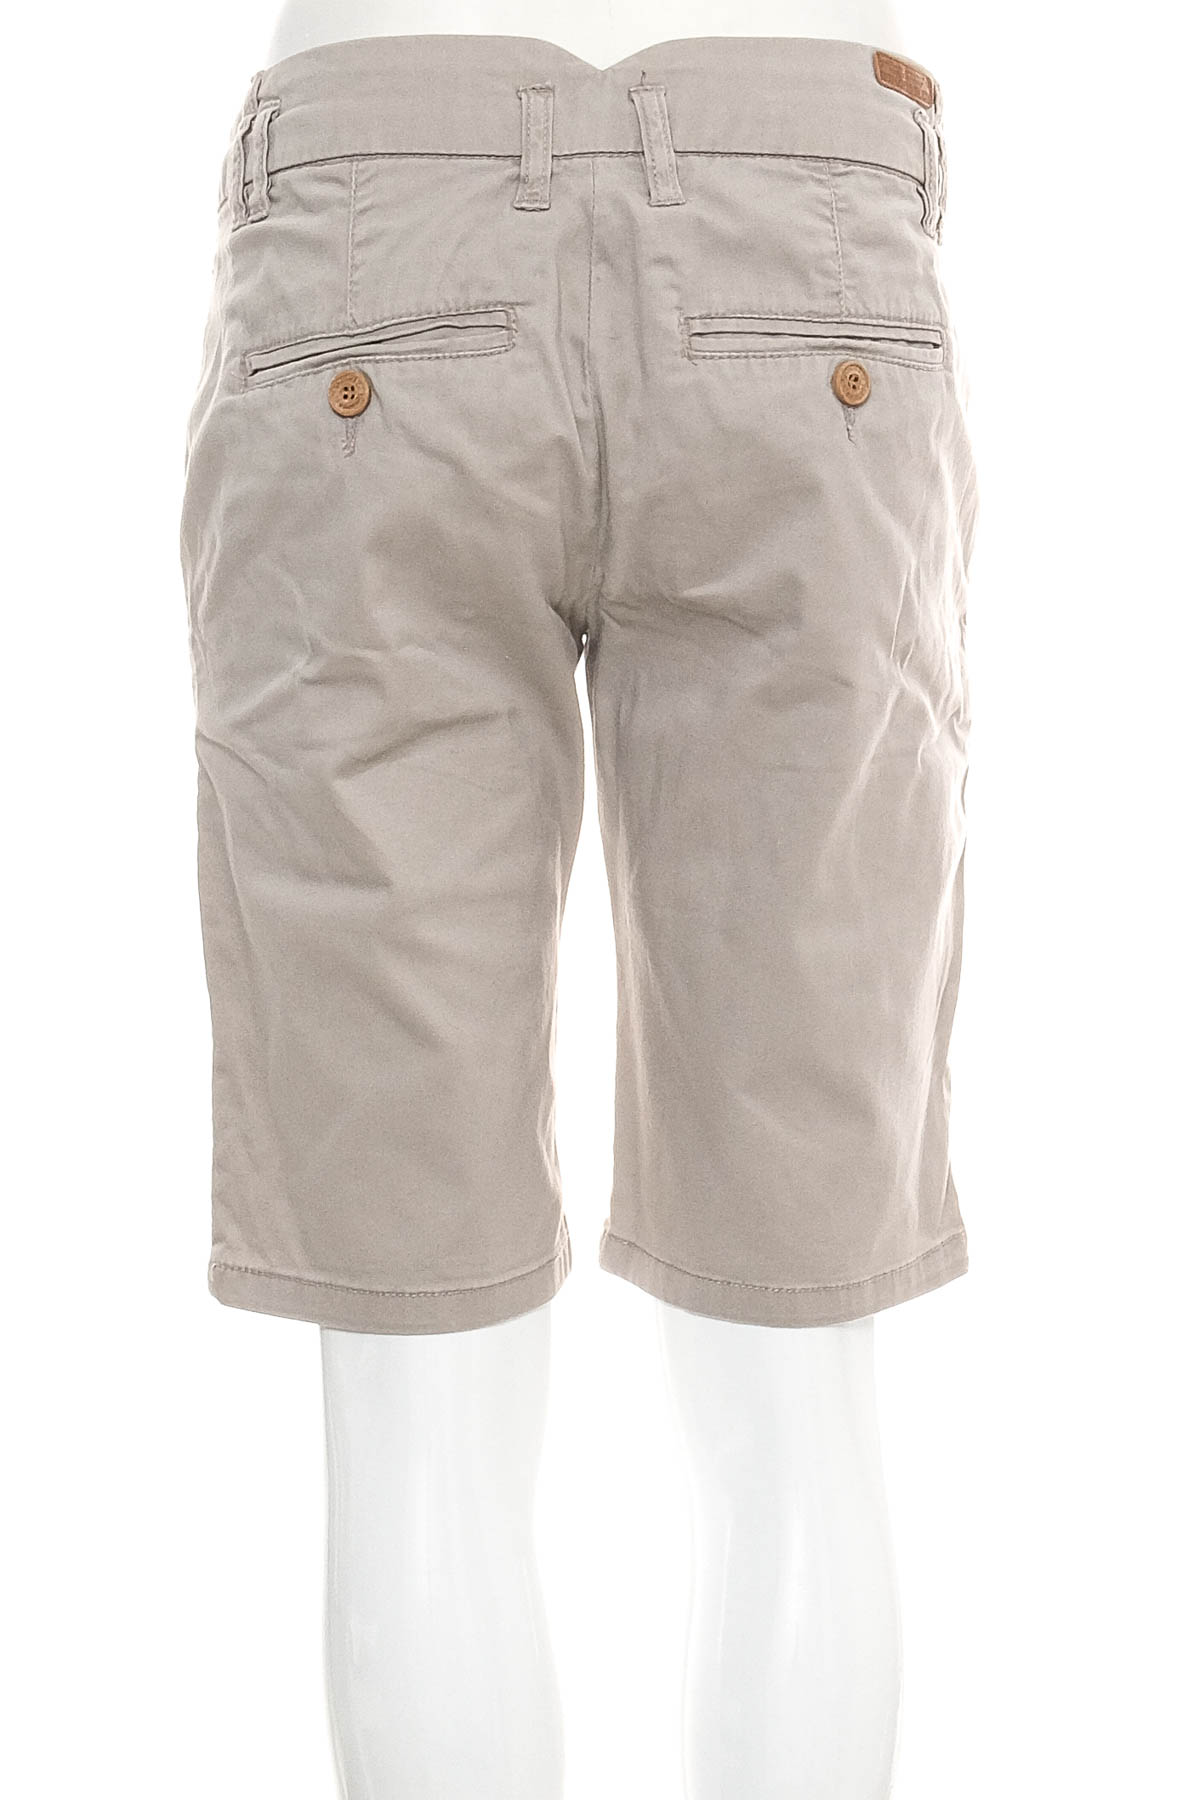 Female shorts - E2N - 1